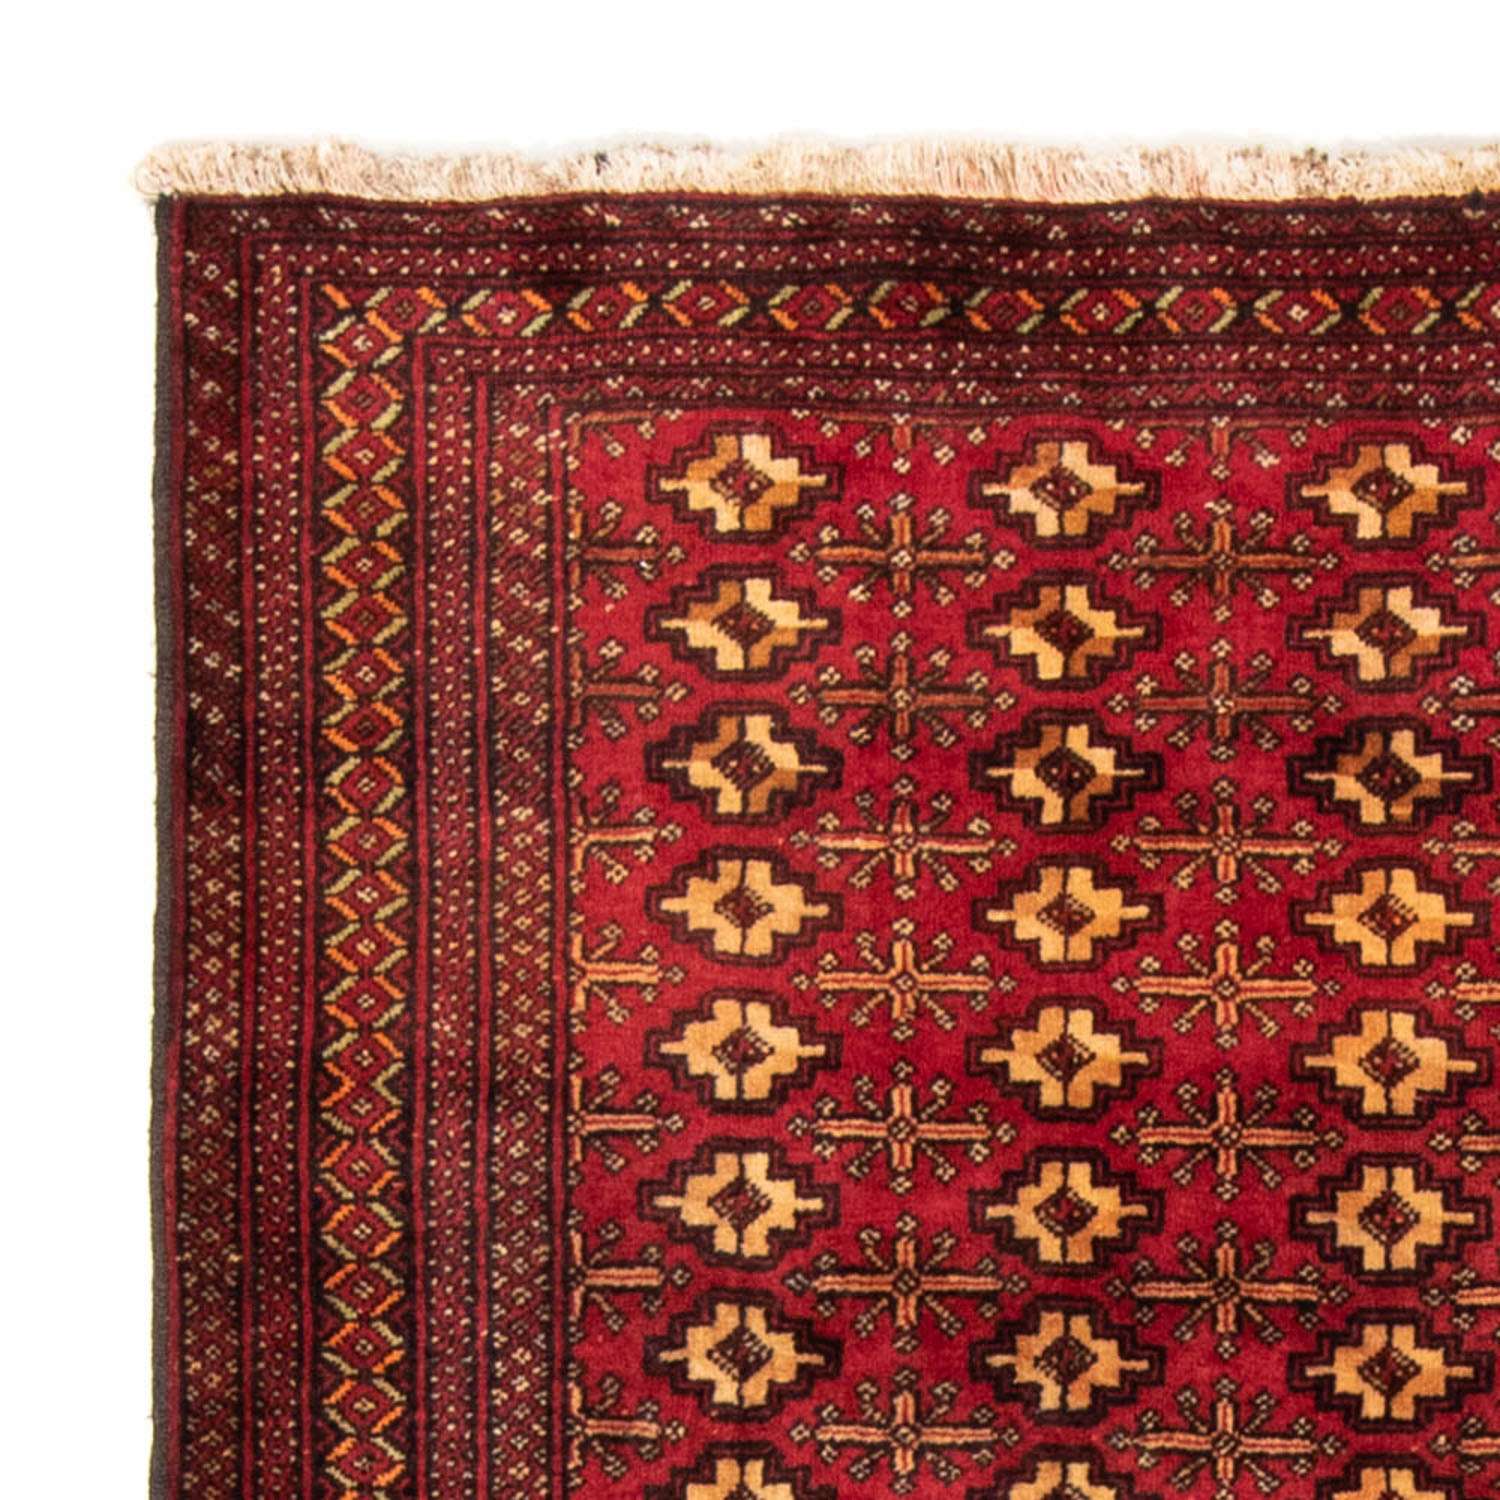 Loper Baluch tapijt - 200 x 106 cm - rood